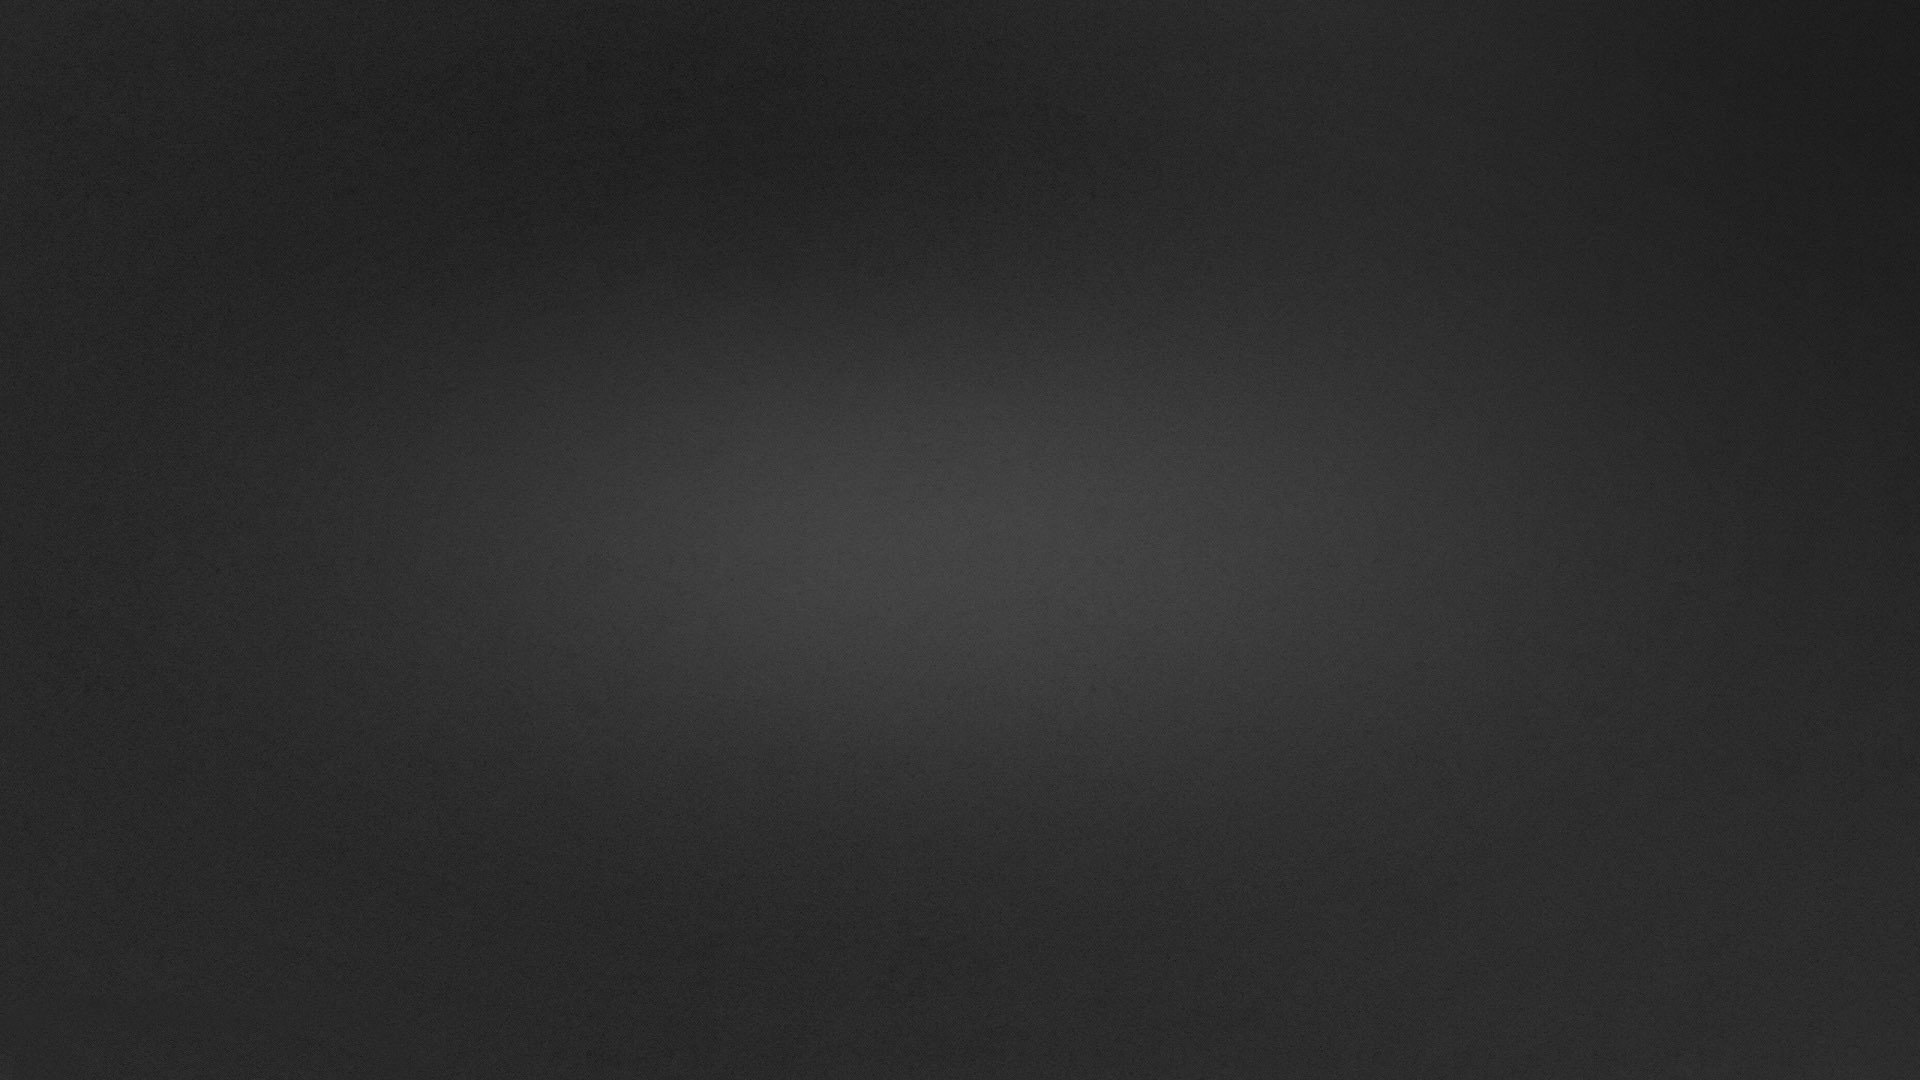 Gray and Black Wallpaper - WallpaperSafari